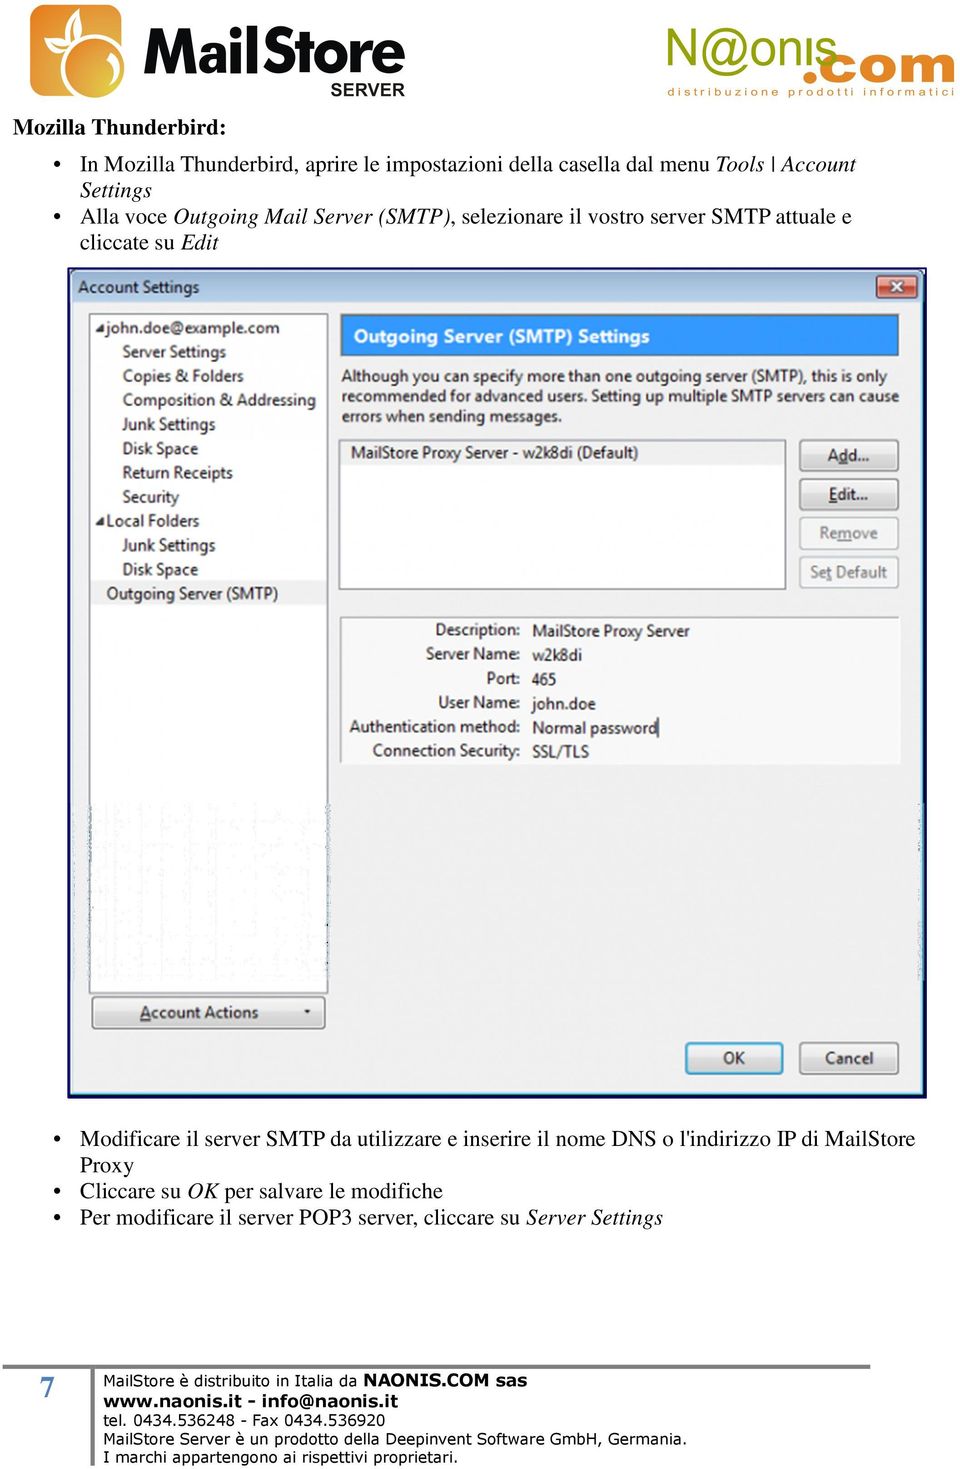 Edit Modificare il server SMTP da utilizzare e inserire il nome DNS o l'indirizzo IP di MailStore Proxy